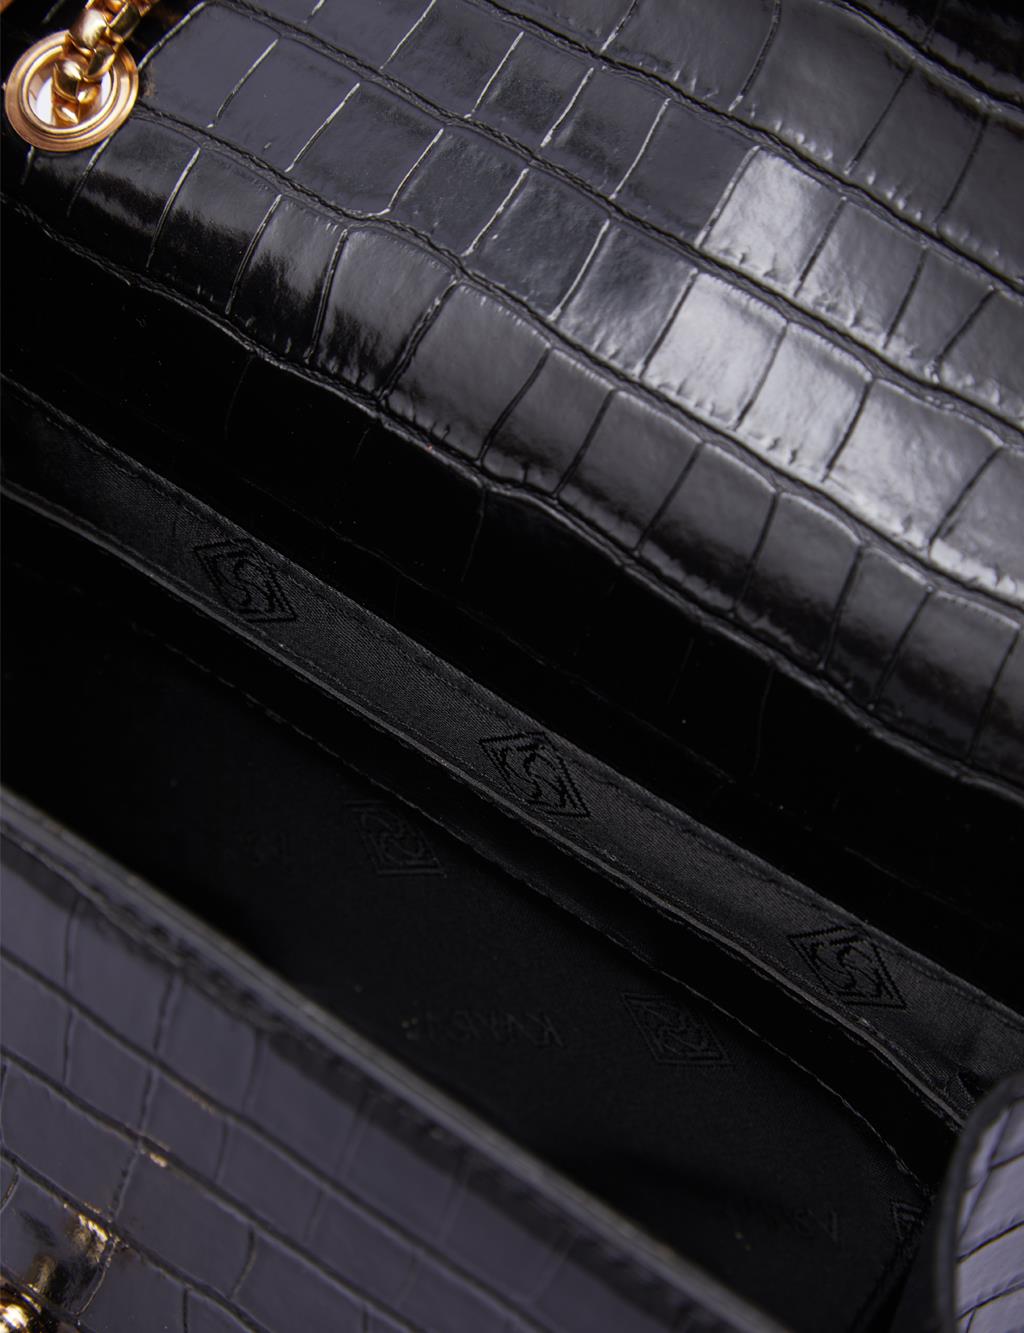 Metal Buckle Croco Pattern Bag Black